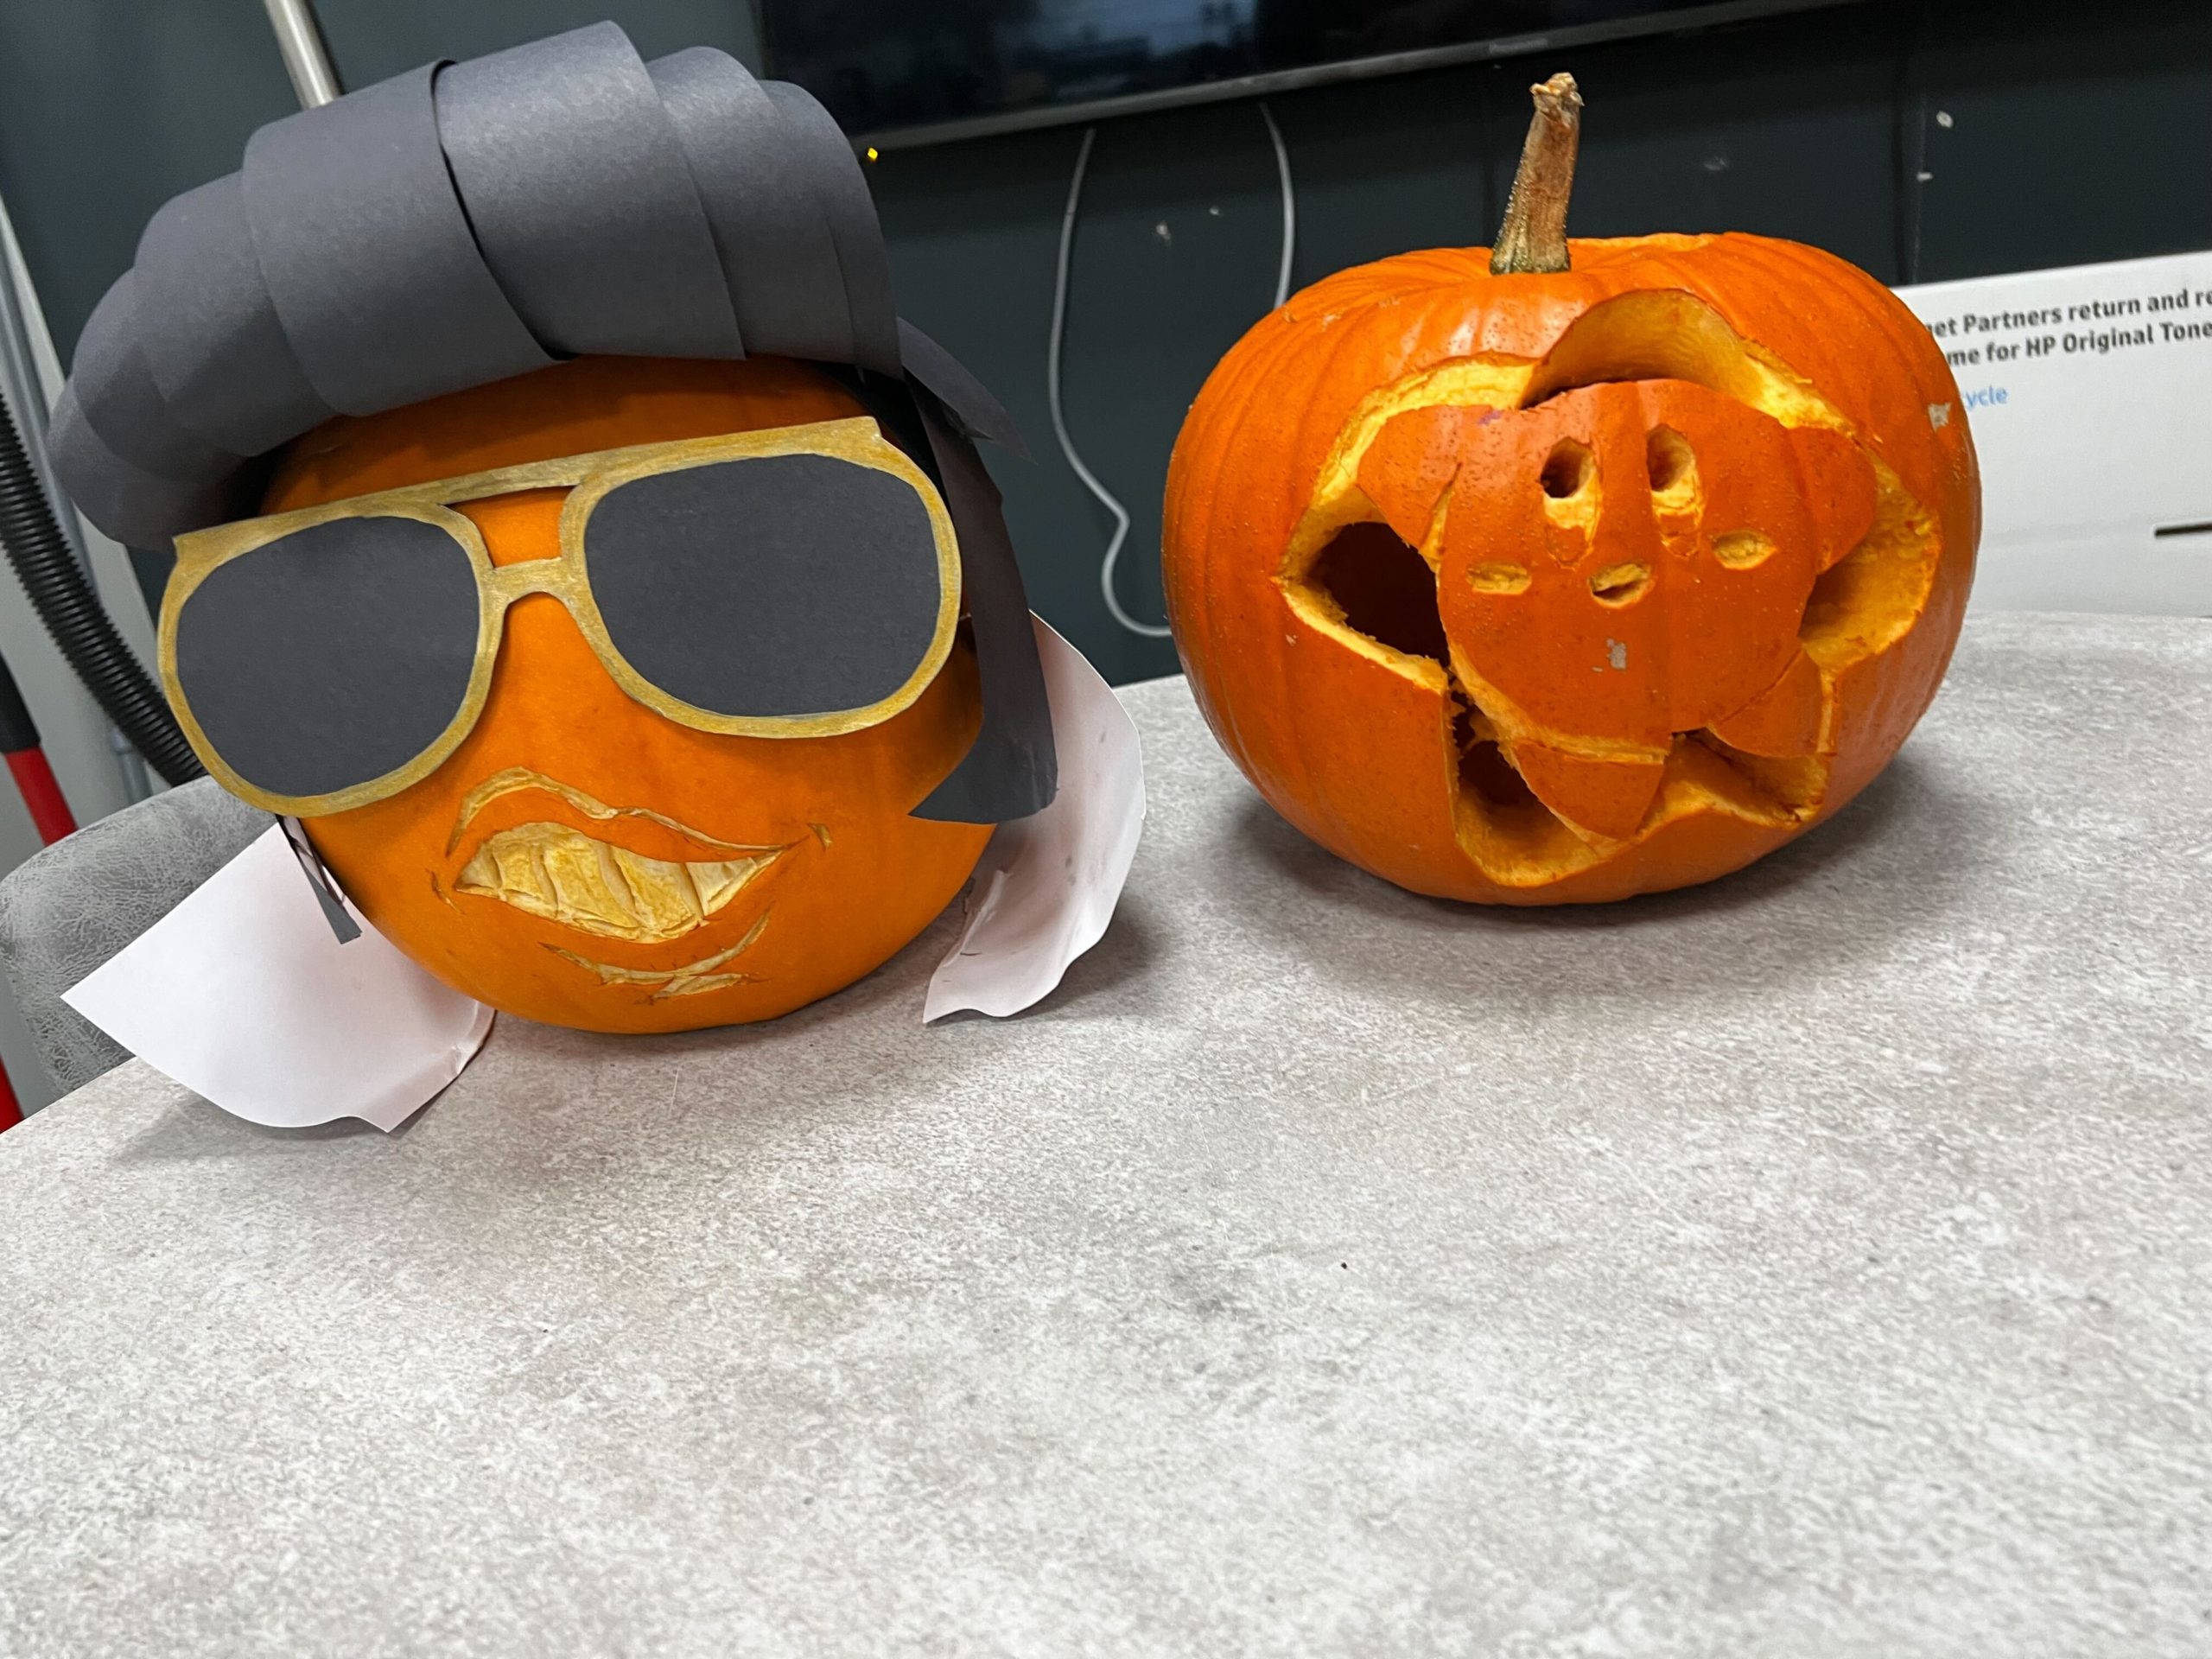 2 Carved Pumpkins